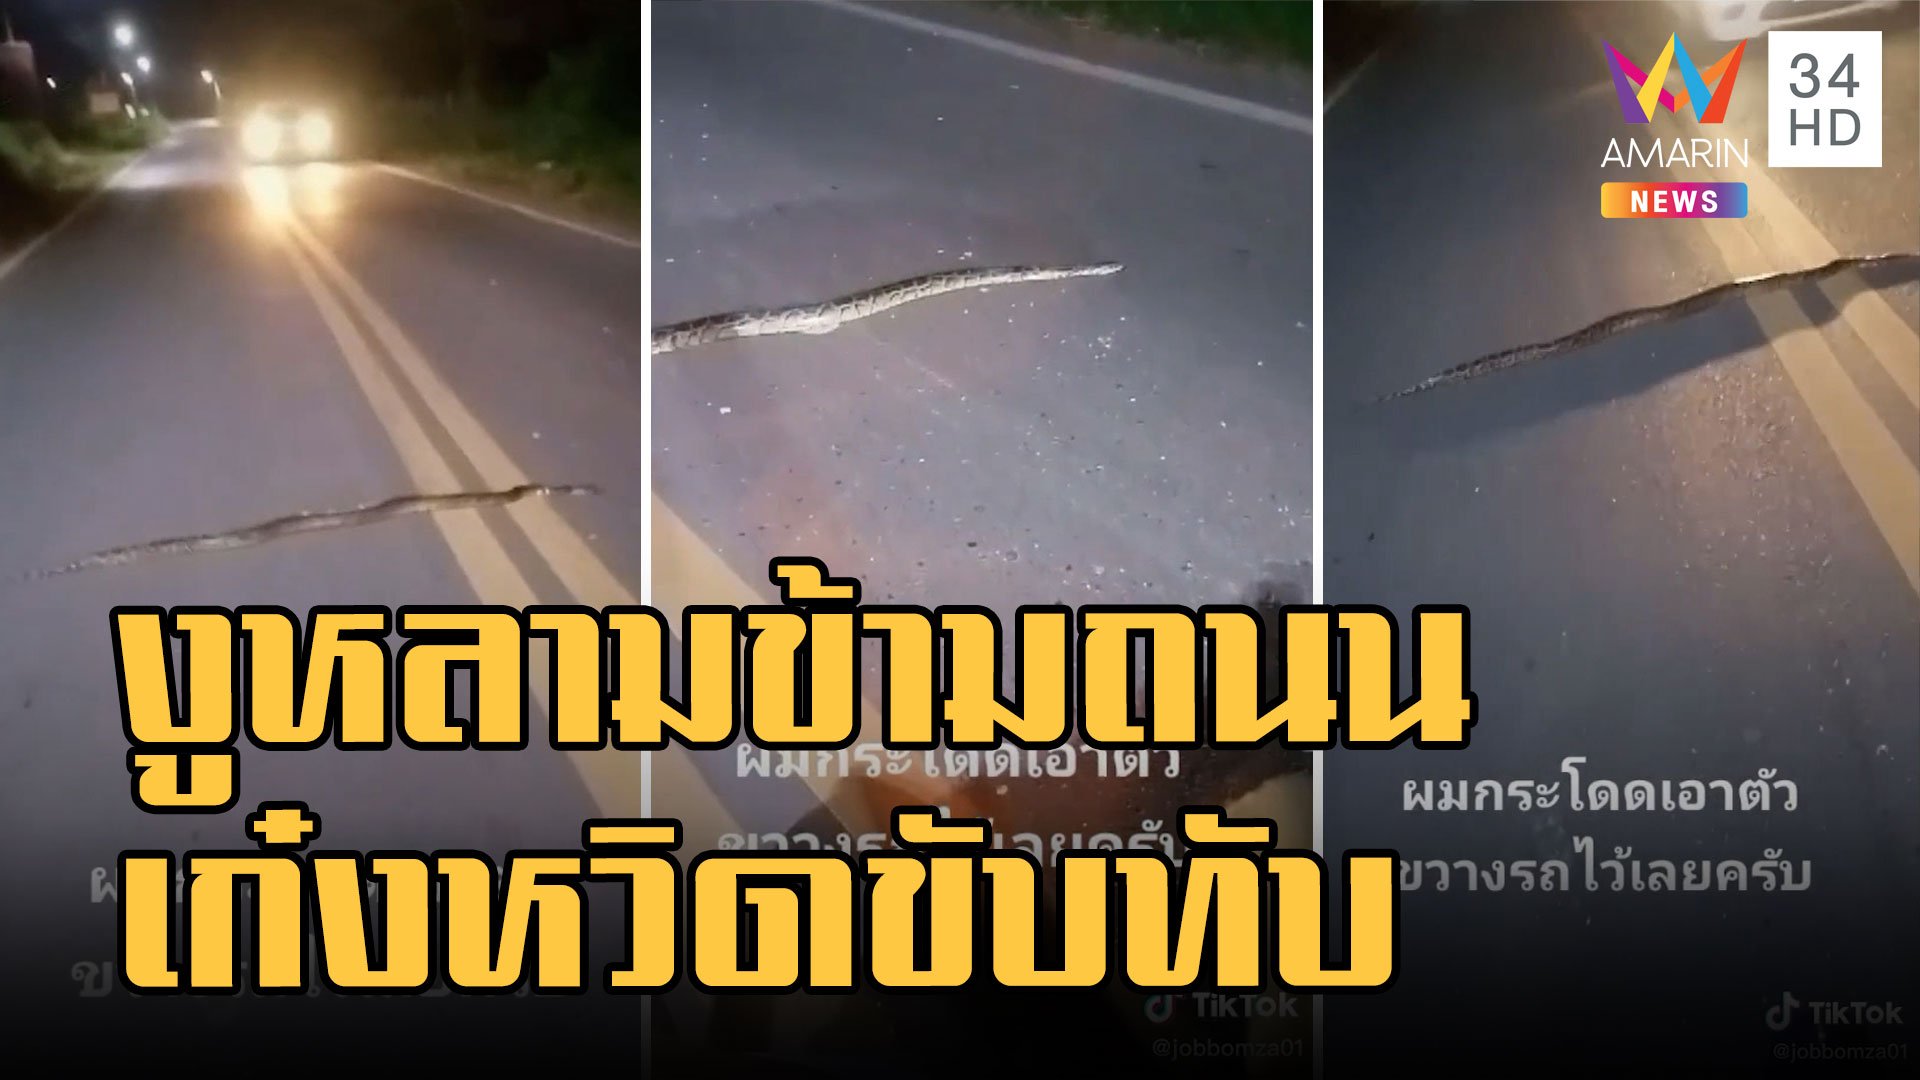 งูหลามเลื้อยข้ามถนน หนุ่มใจบุญโบกรถให้น้องข้ามเข้าป่าไป | ข่าวอรุณอมรินทร์ | 29 ก.ย. 65 | AMARIN TVHD34